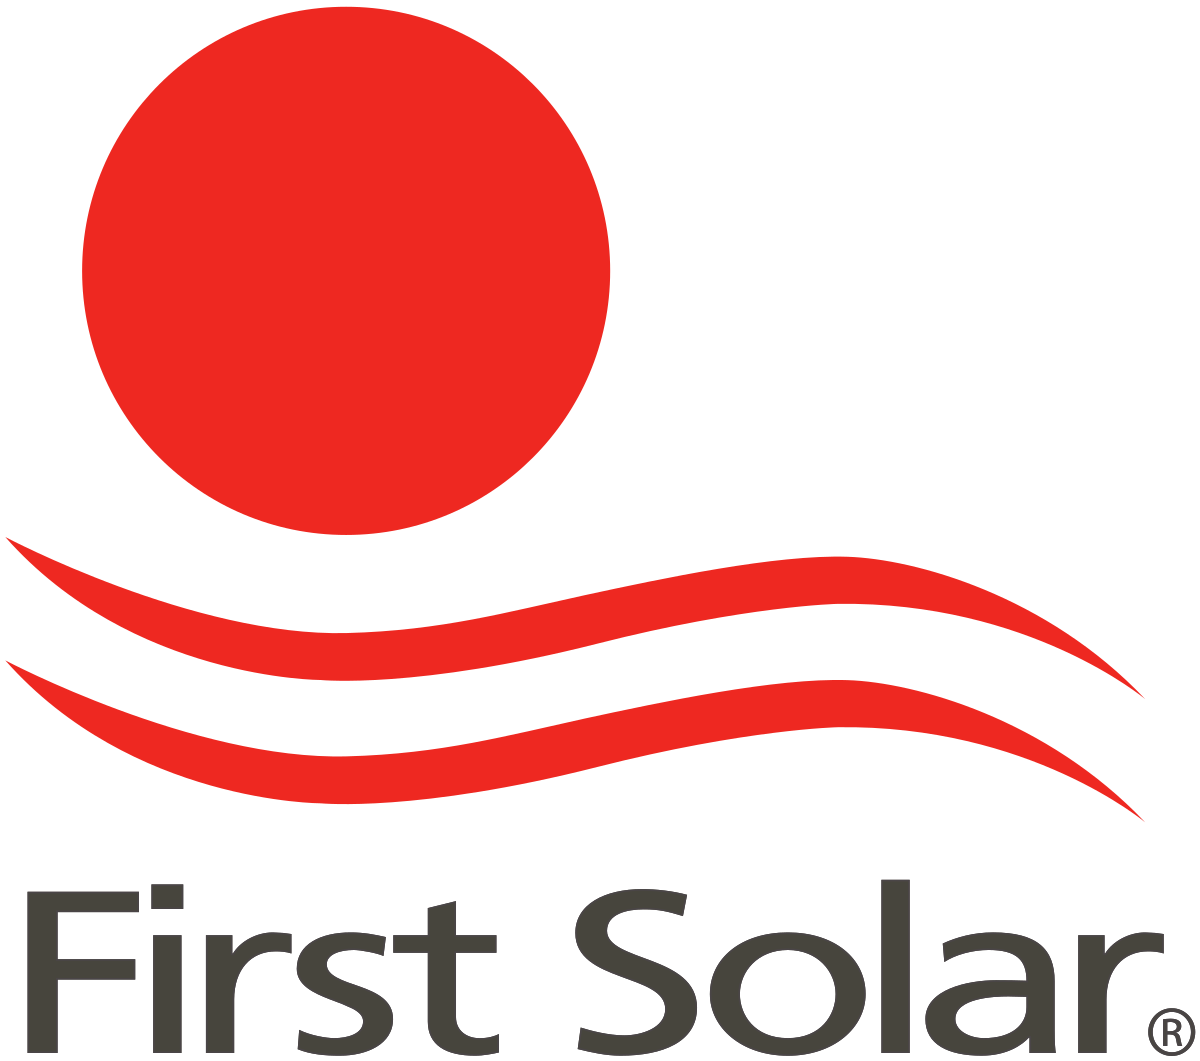 First Solar - Wikipedia